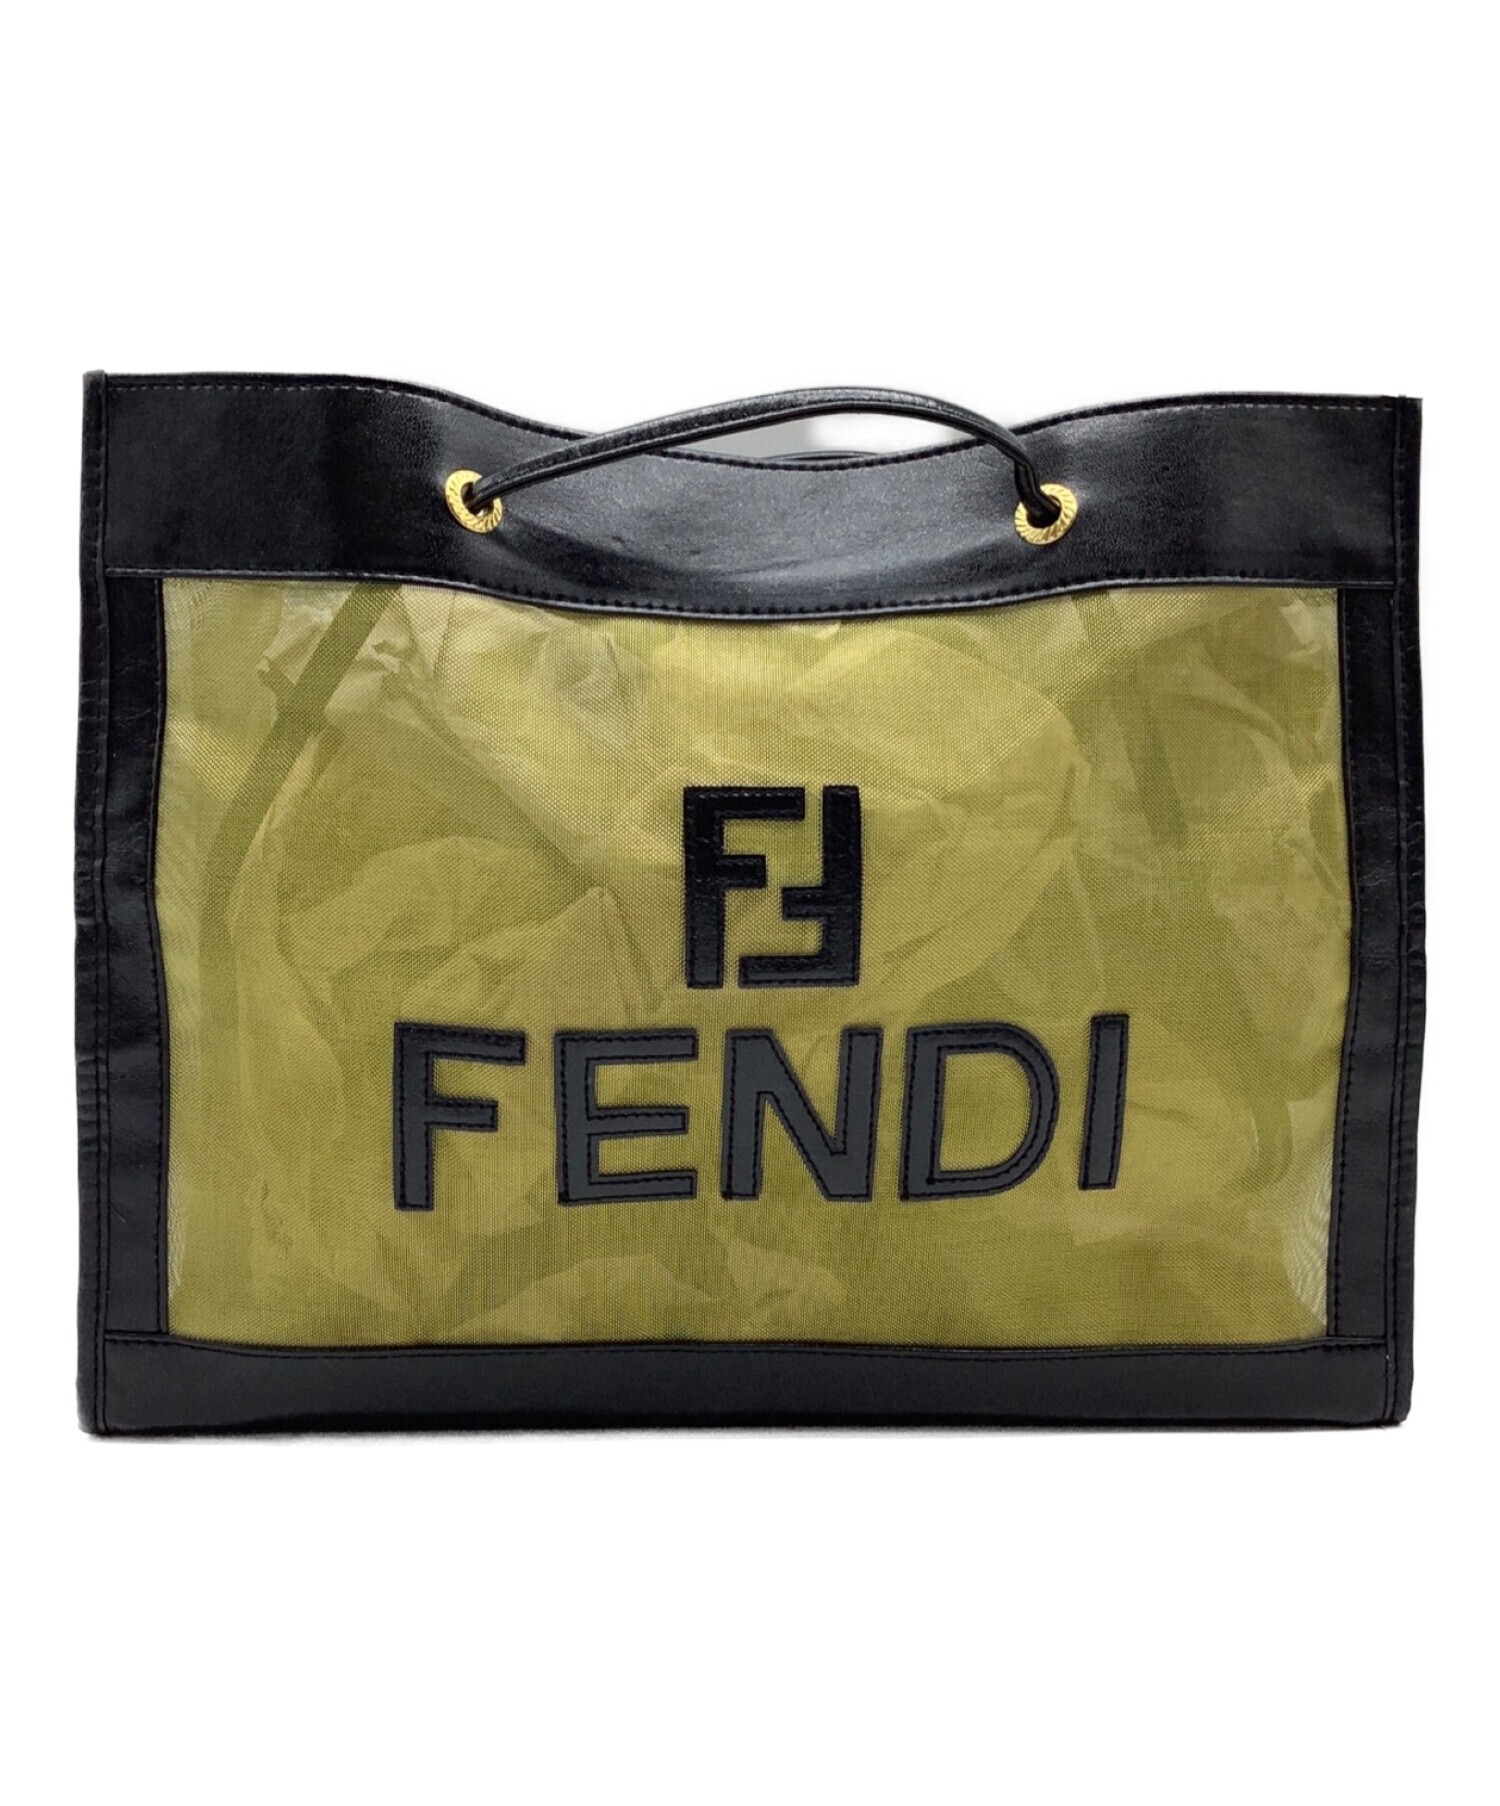 FENDI (フェンディ) メッシュトートバッグ ブラック×ゴールド